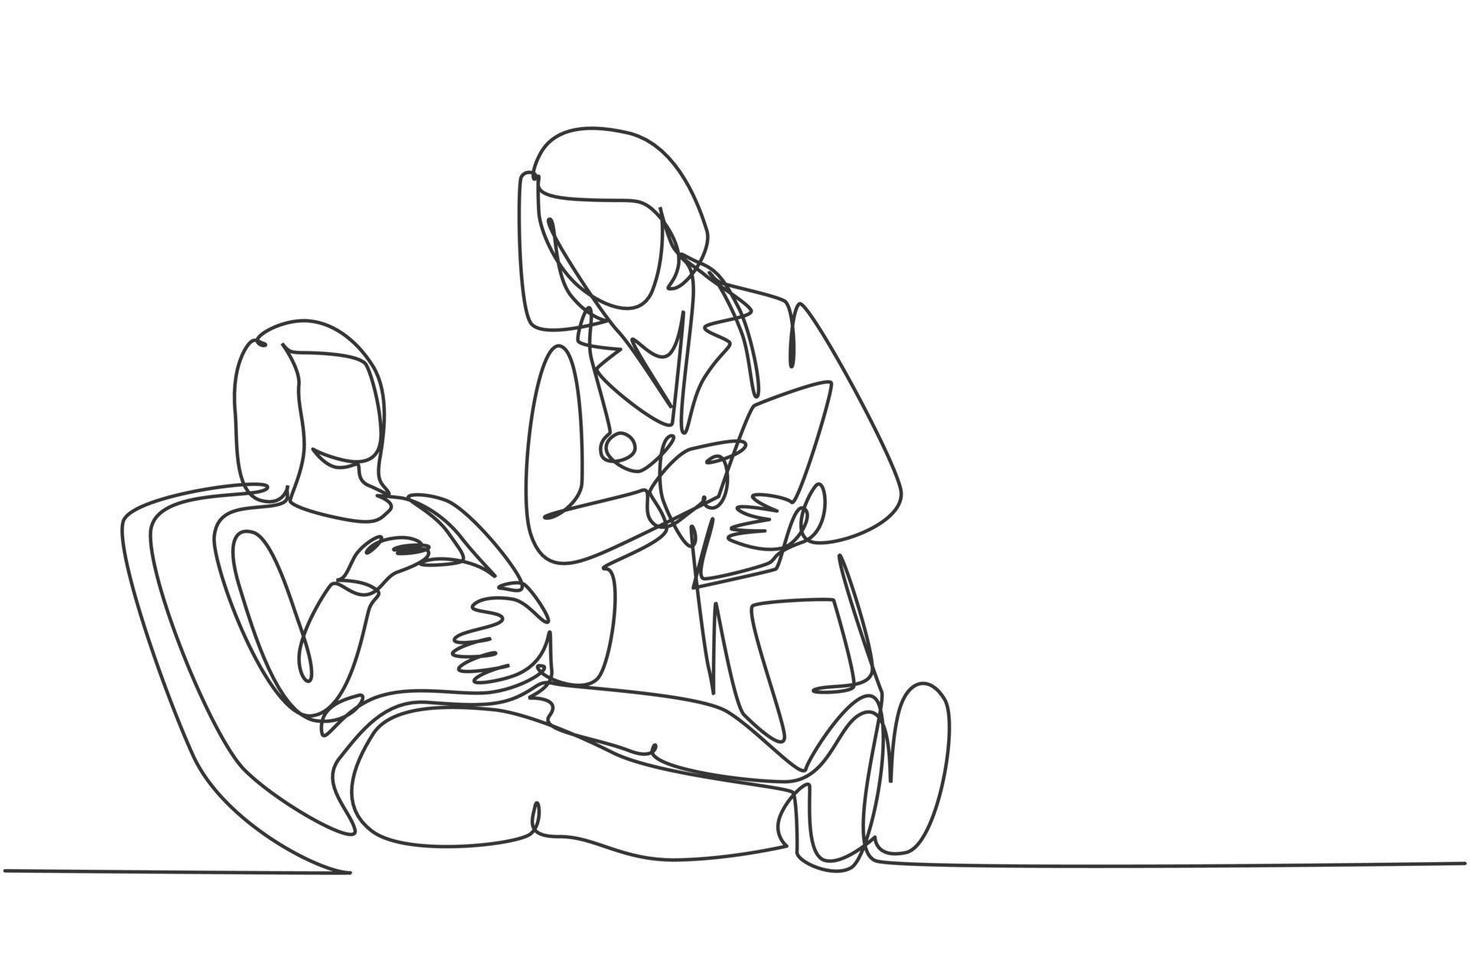 un disegno a tratteggio di una dottoressa ostetrica e ginecologica che parla con il paziente e spiega le condizioni dell'utero. concetto di assistenza sanitaria in gravidanza illustrazione vettoriale di disegno di linea continua di disegno